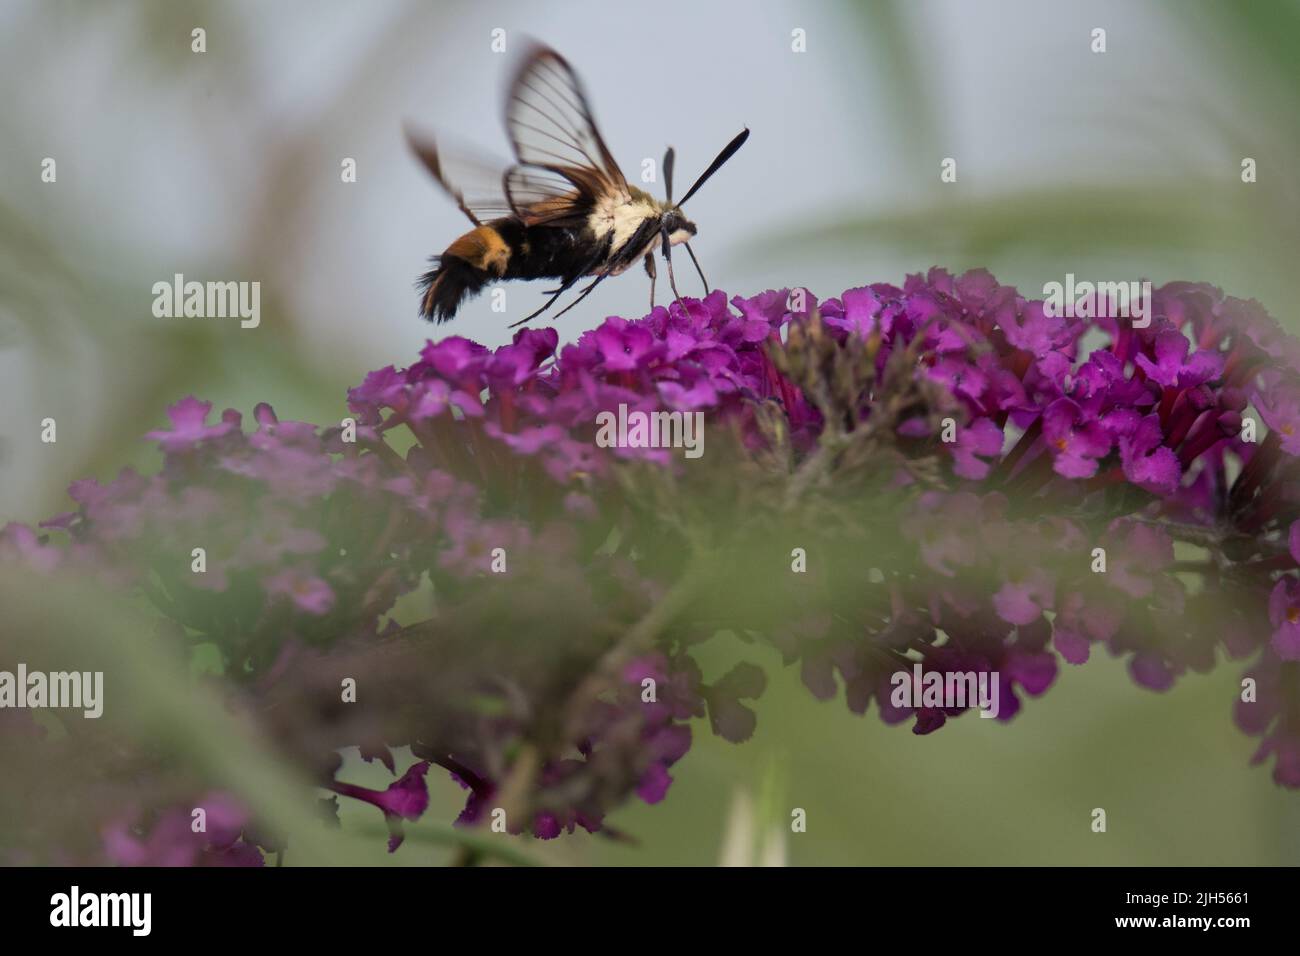 La polilla del colibrí se extiende sobre las flores del arbusto de la mariposa Foto de stock